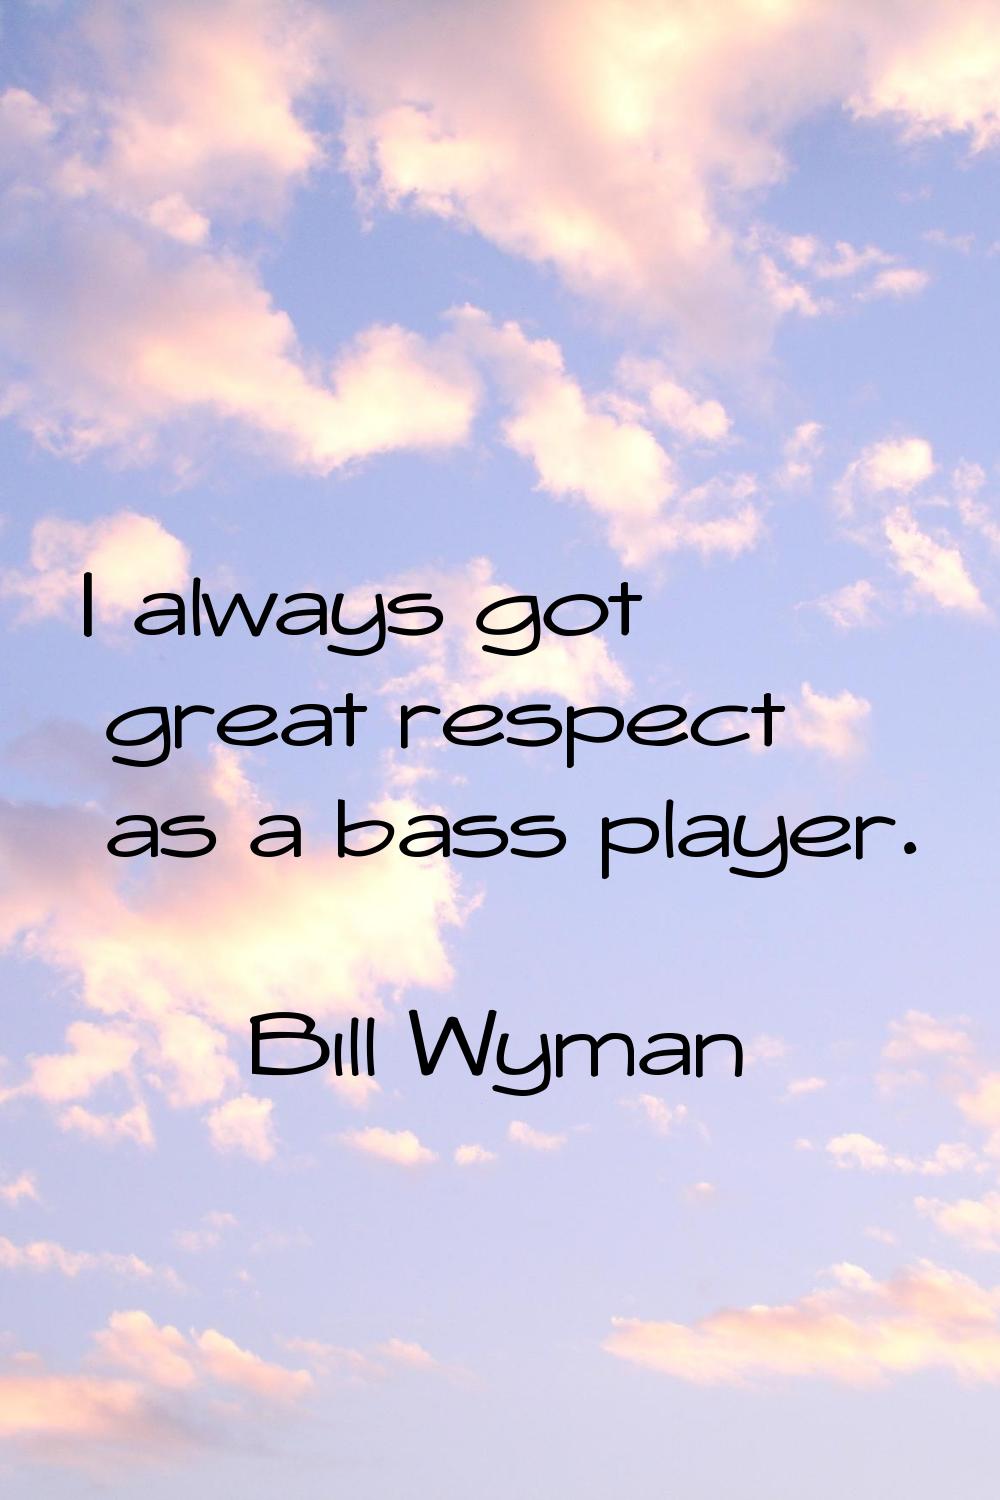 I always got great respect as a bass player.